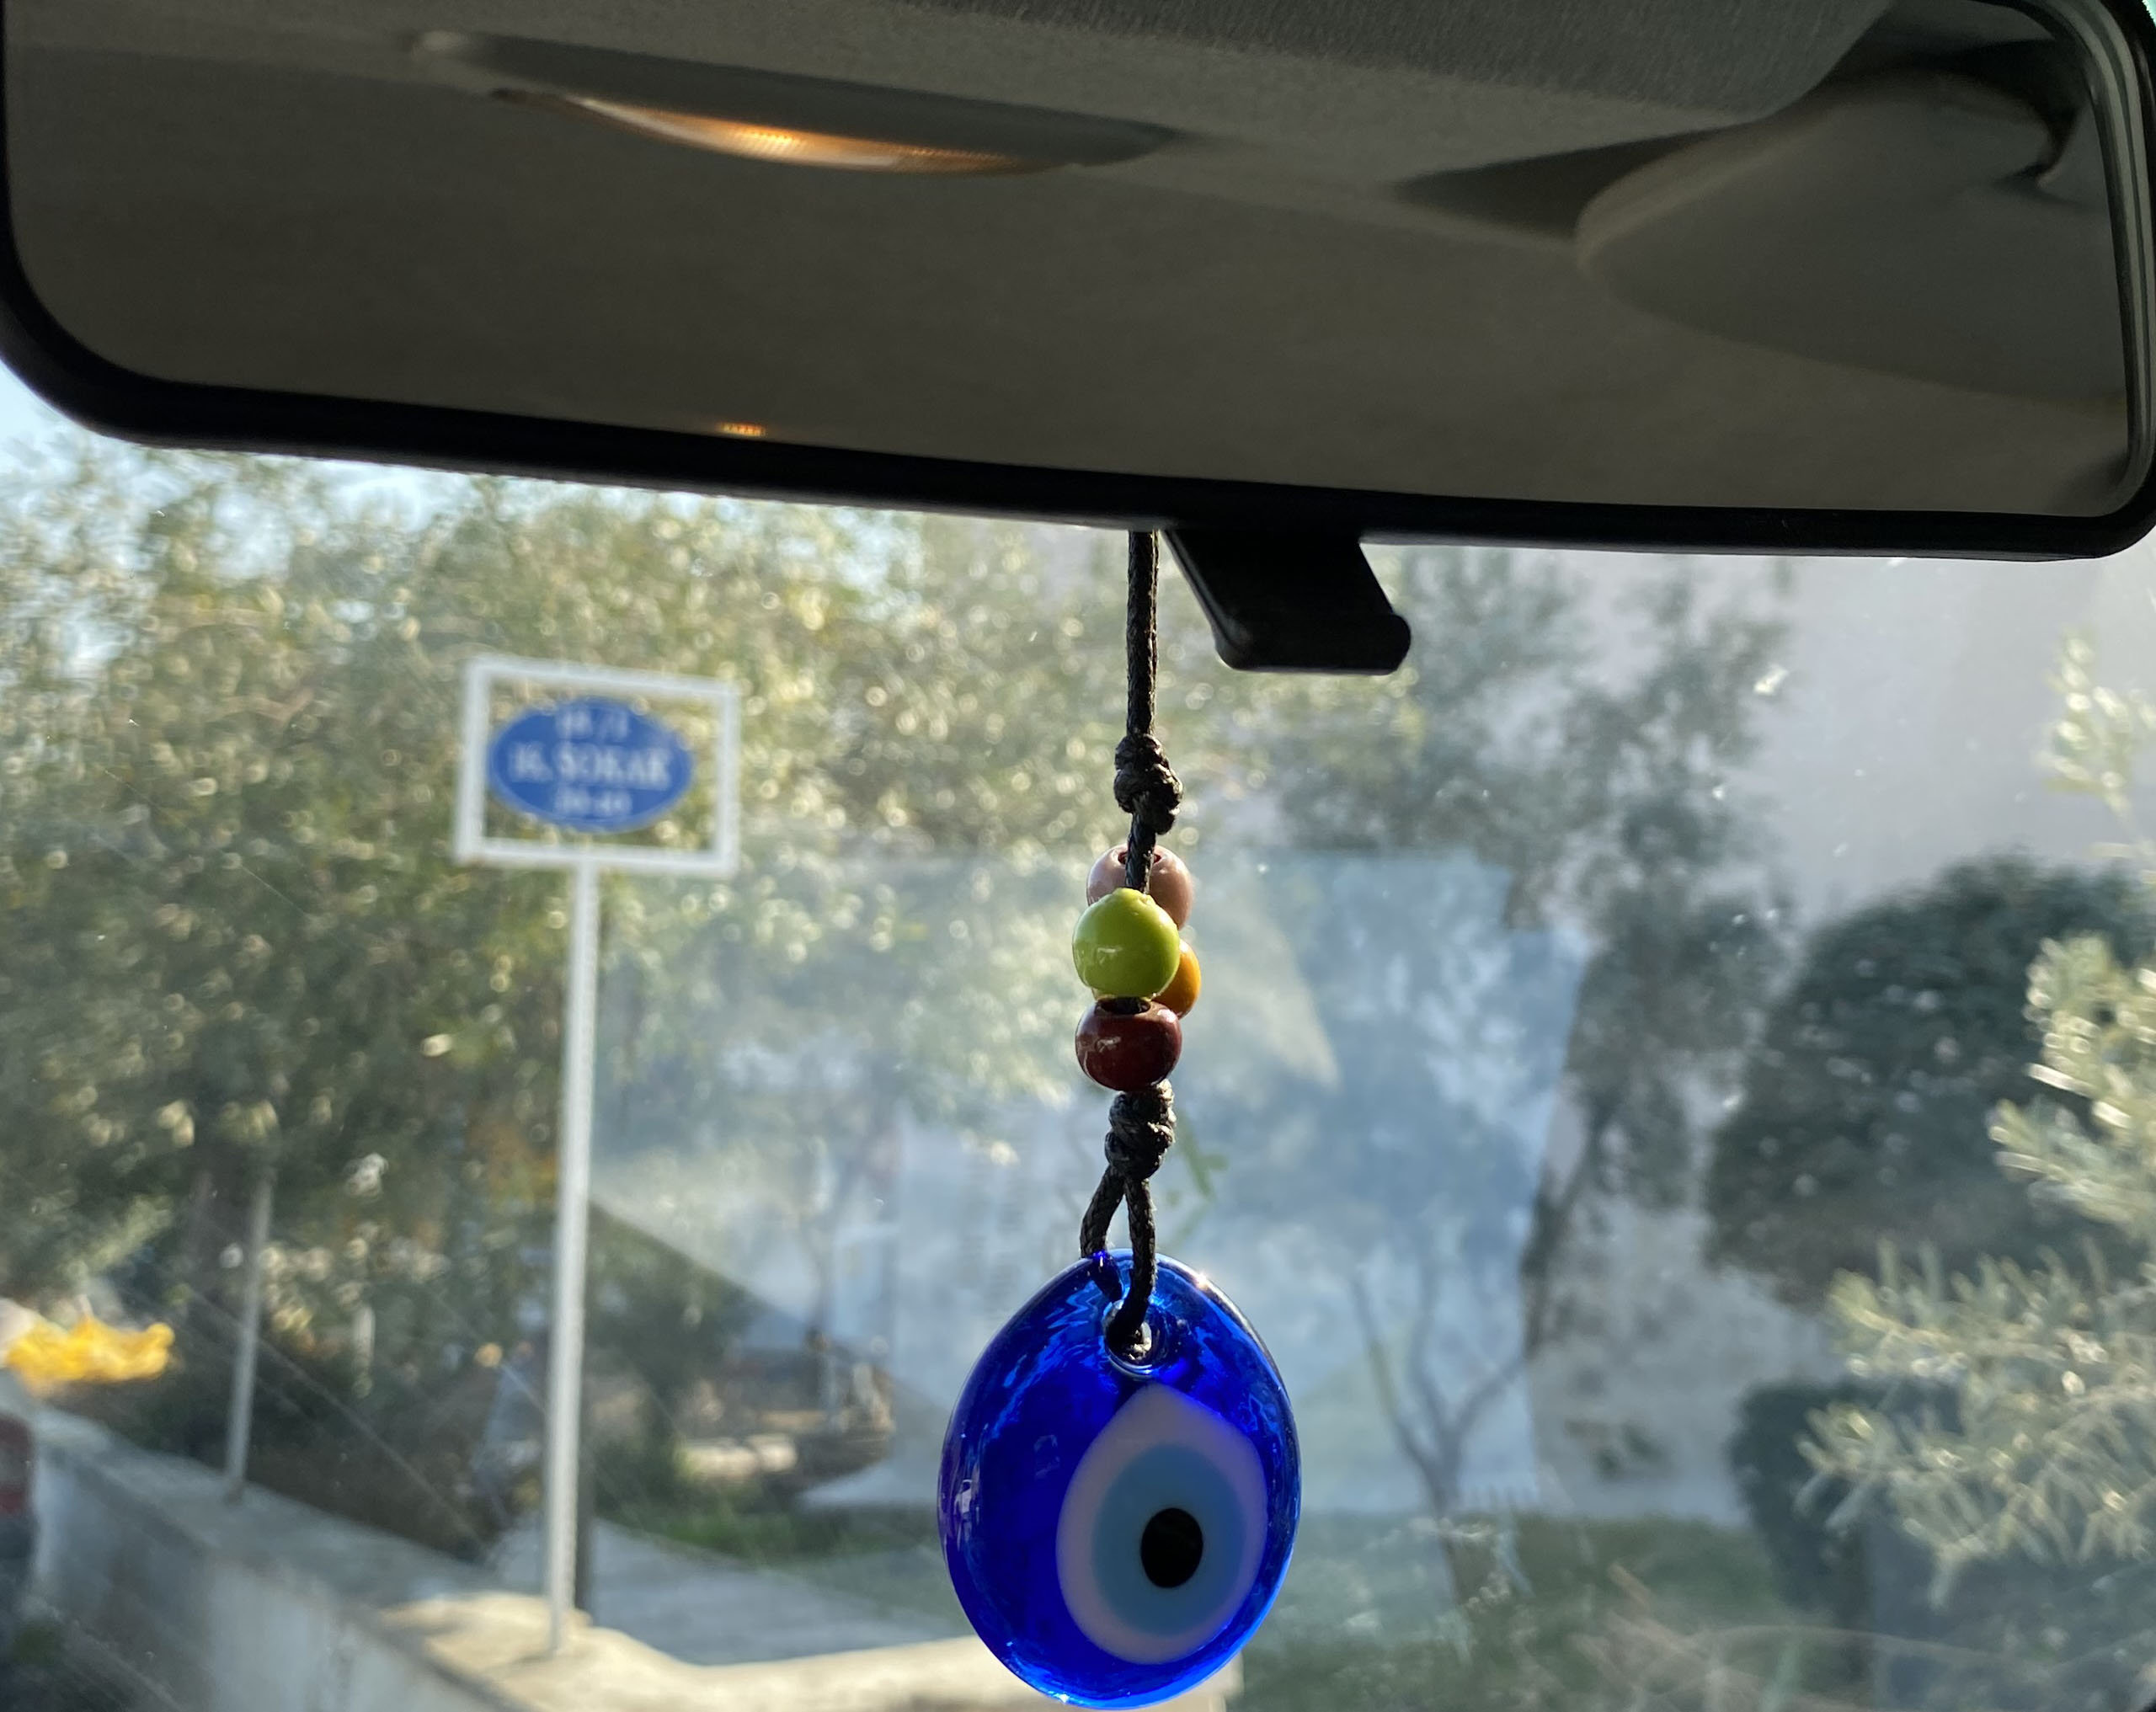 Auto Rückspiegel Anhänger - Jaspis - Schutzengel Flügel - Spiegelbaumler,  Spiegelcharm - Rückspiegelanhänger, Autospiege